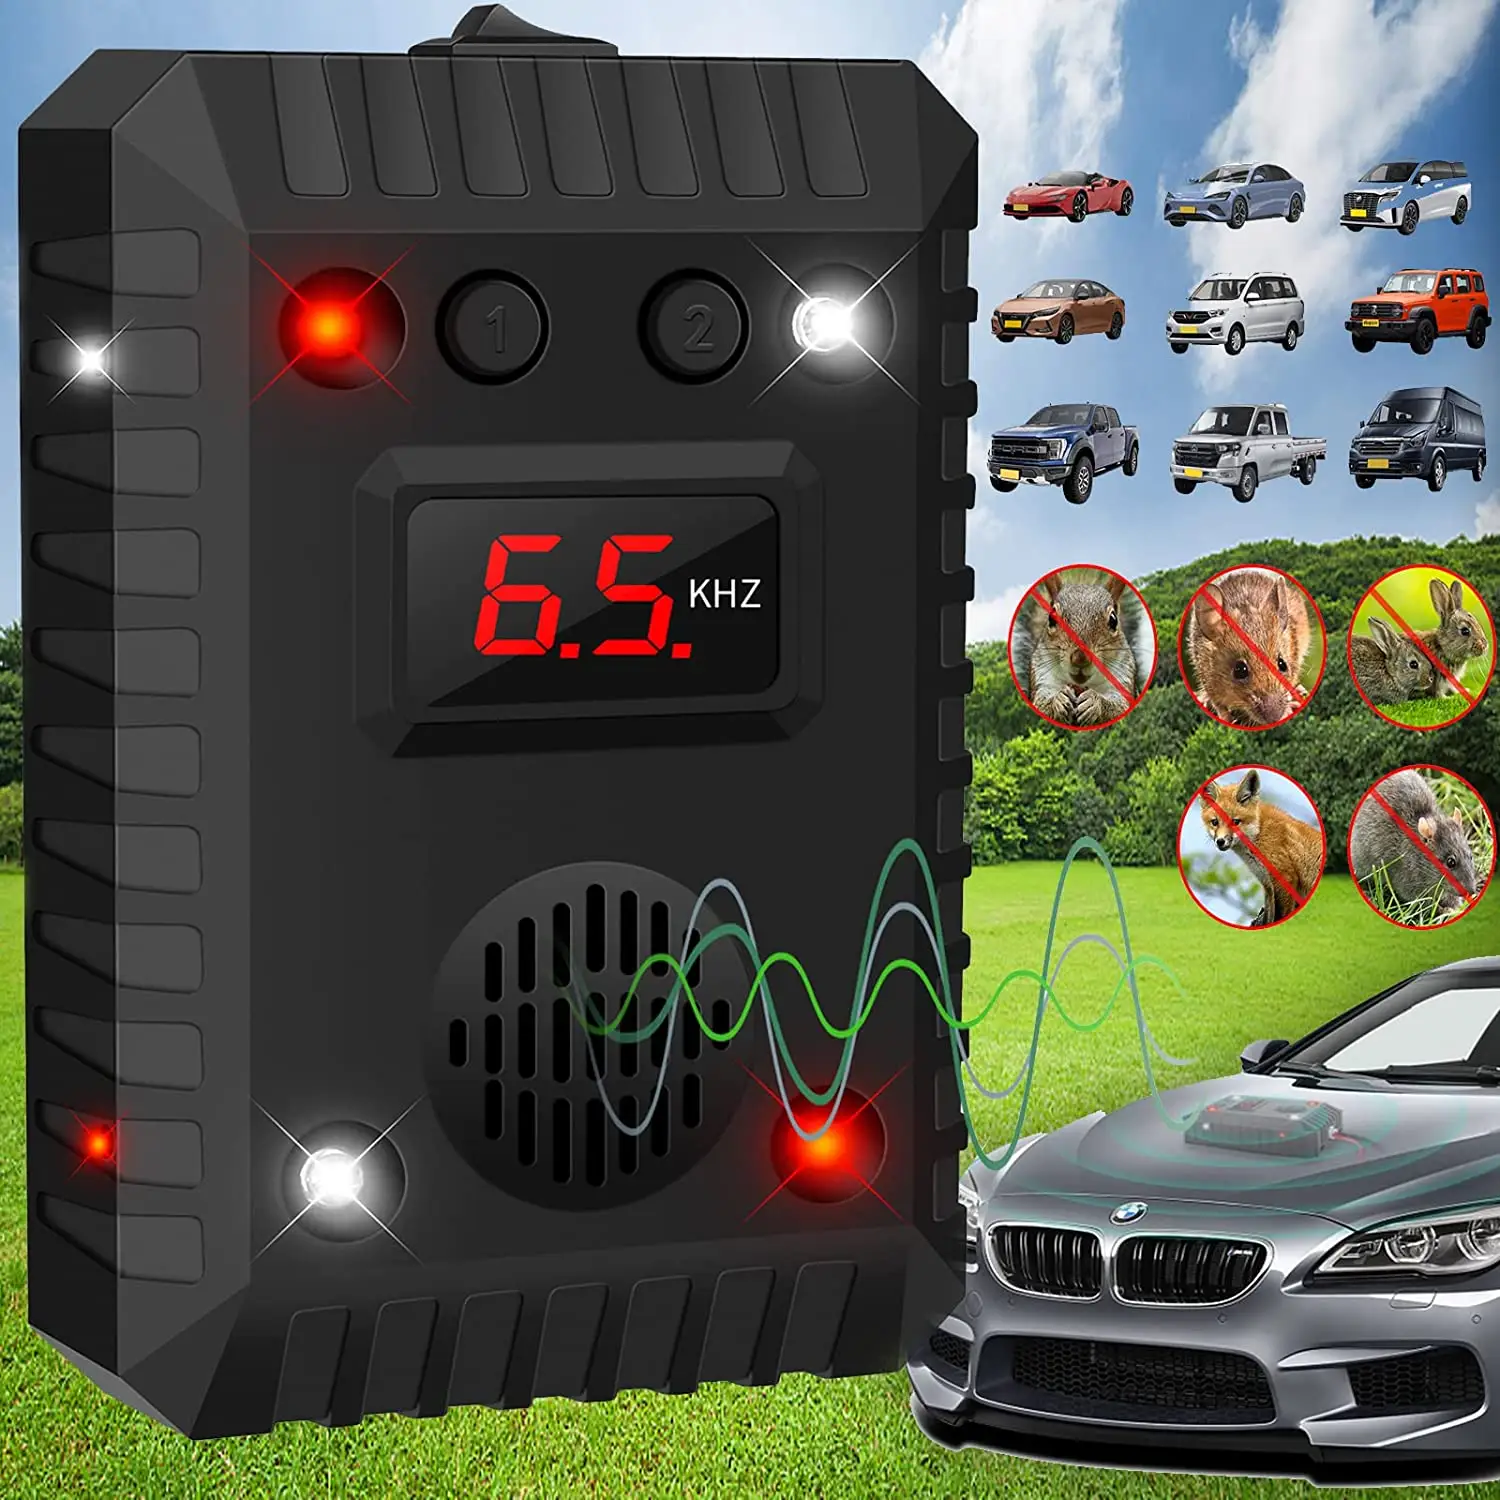 SJZ otomatik ultrason araç araba kemirgen kovucu titreşim sensörü algılama ile caydırıcı elektronik ultrasonik Marten caydırıcı